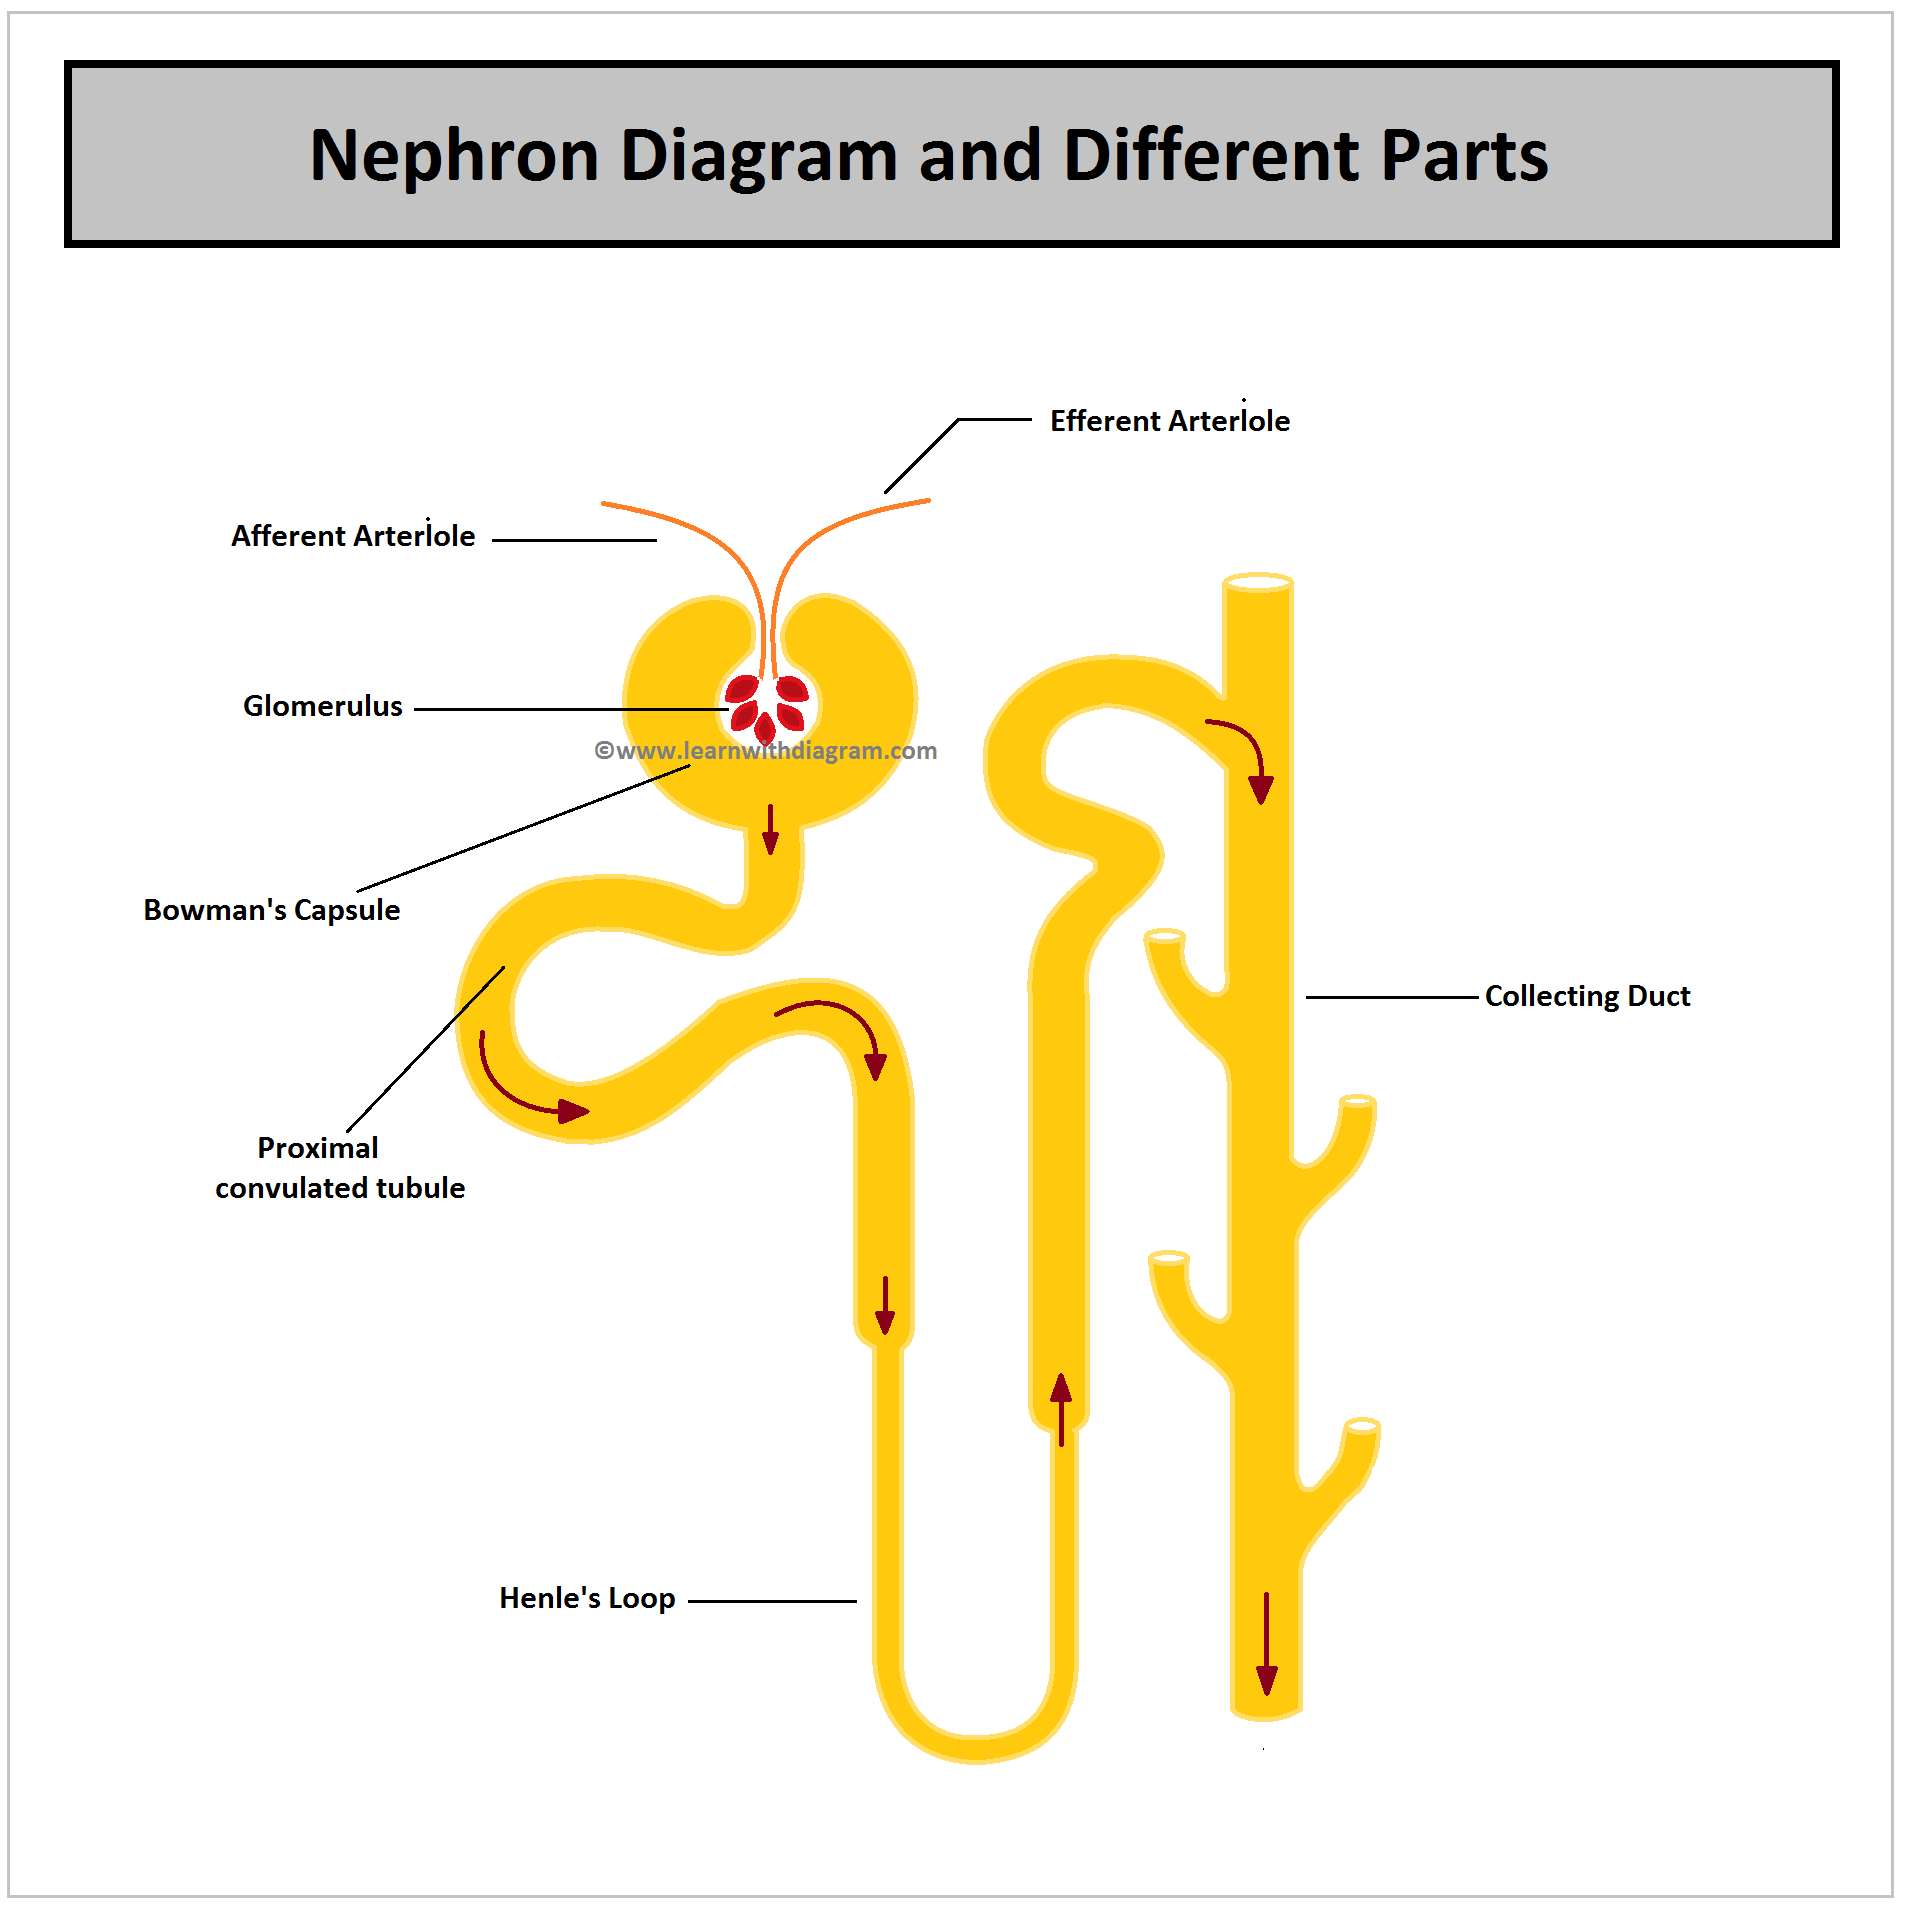 Nephron labelled Diagram, Diagram of nephron